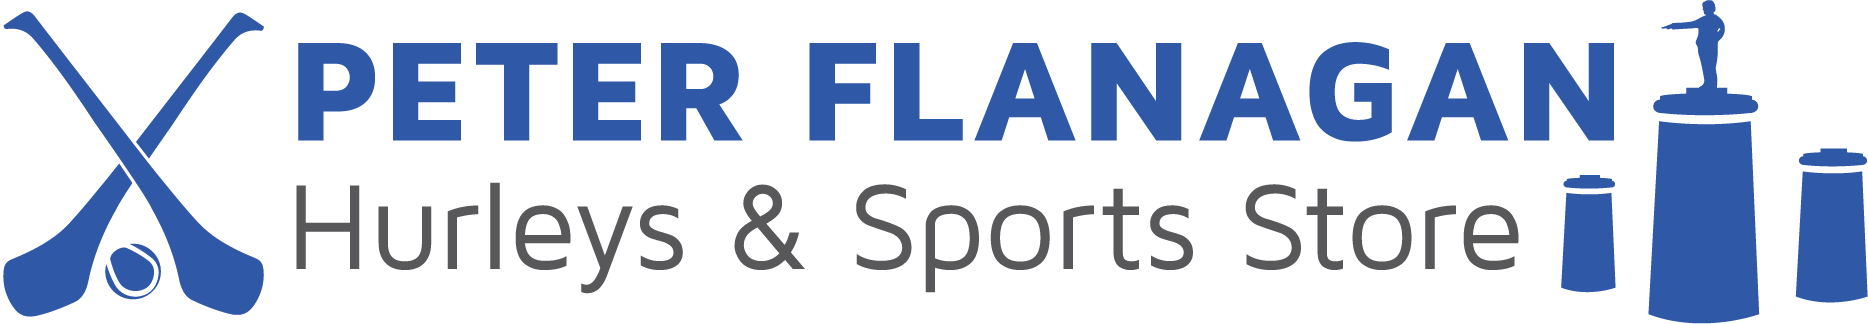 Peter Flanagan Hurleys & Sports